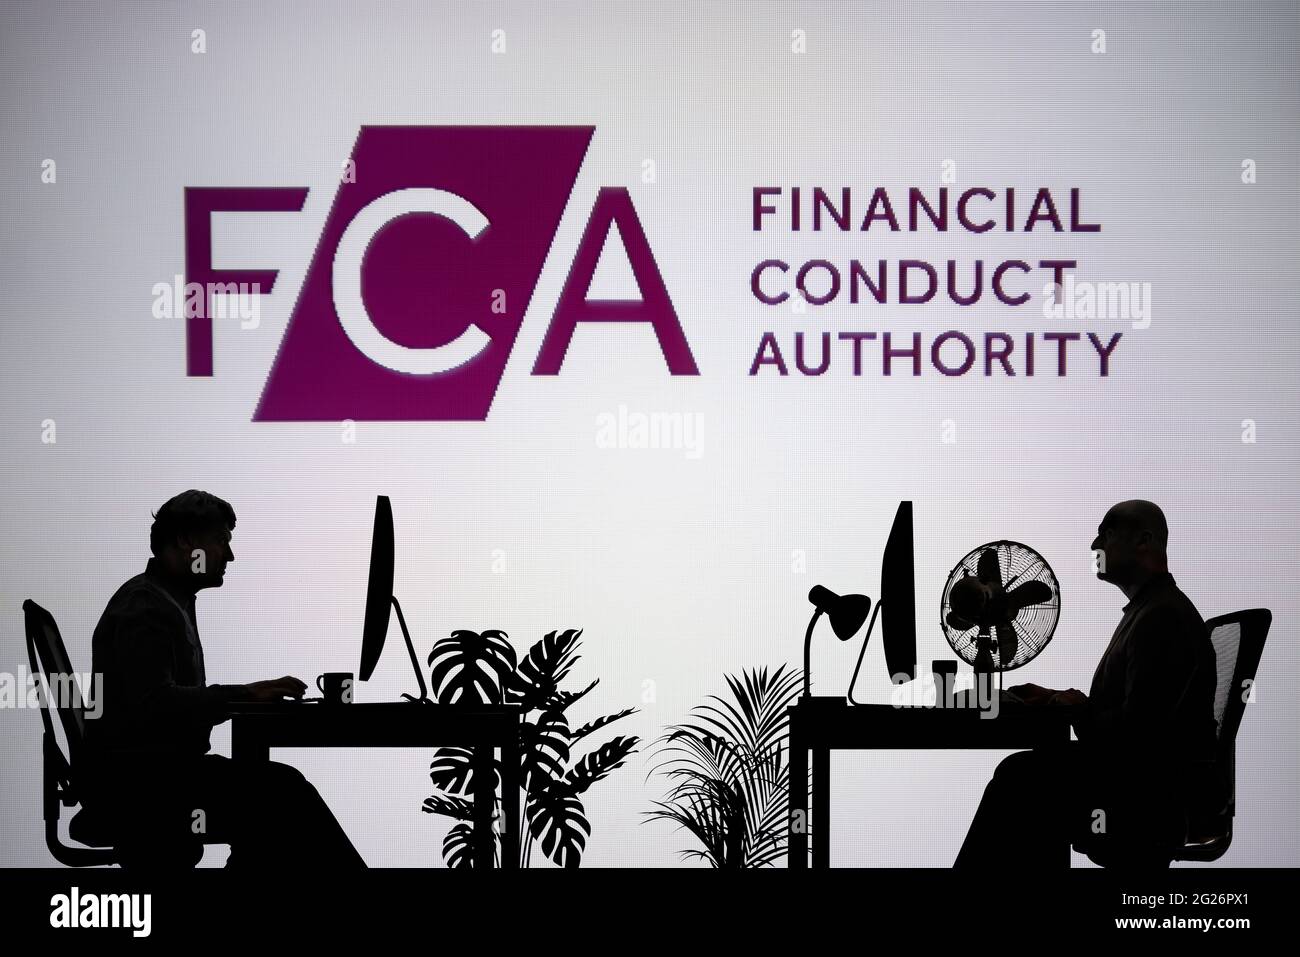 Le logo FCA est visible sur un écran LED en arrière-plan tandis que deux personnes silhouetées travaillent dans un environnement de bureau (usage éditorial uniquement) Banque D'Images